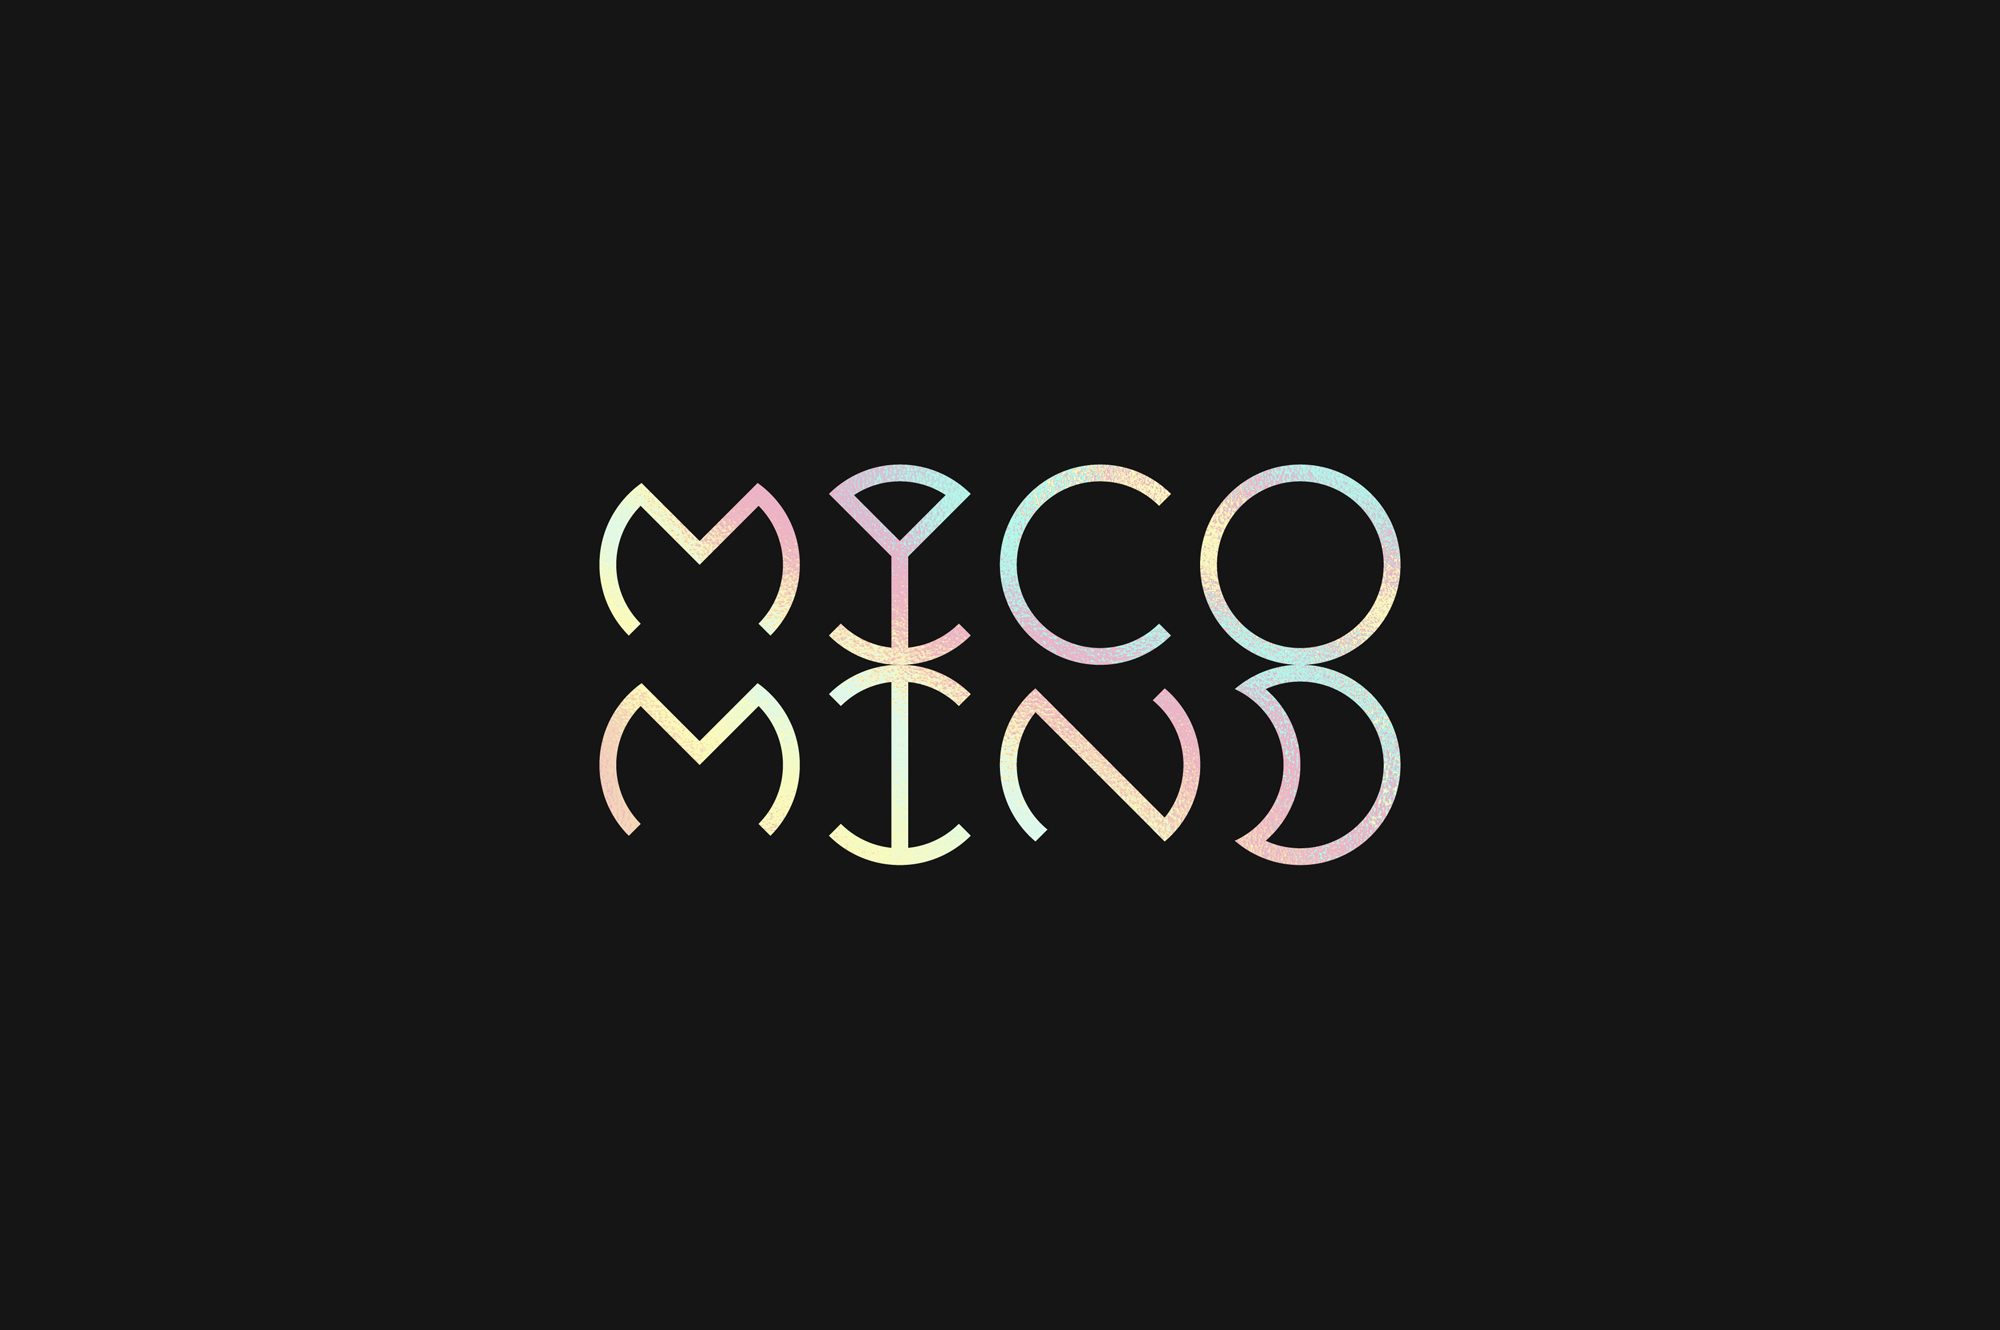 Myco Mind - typo monochrome